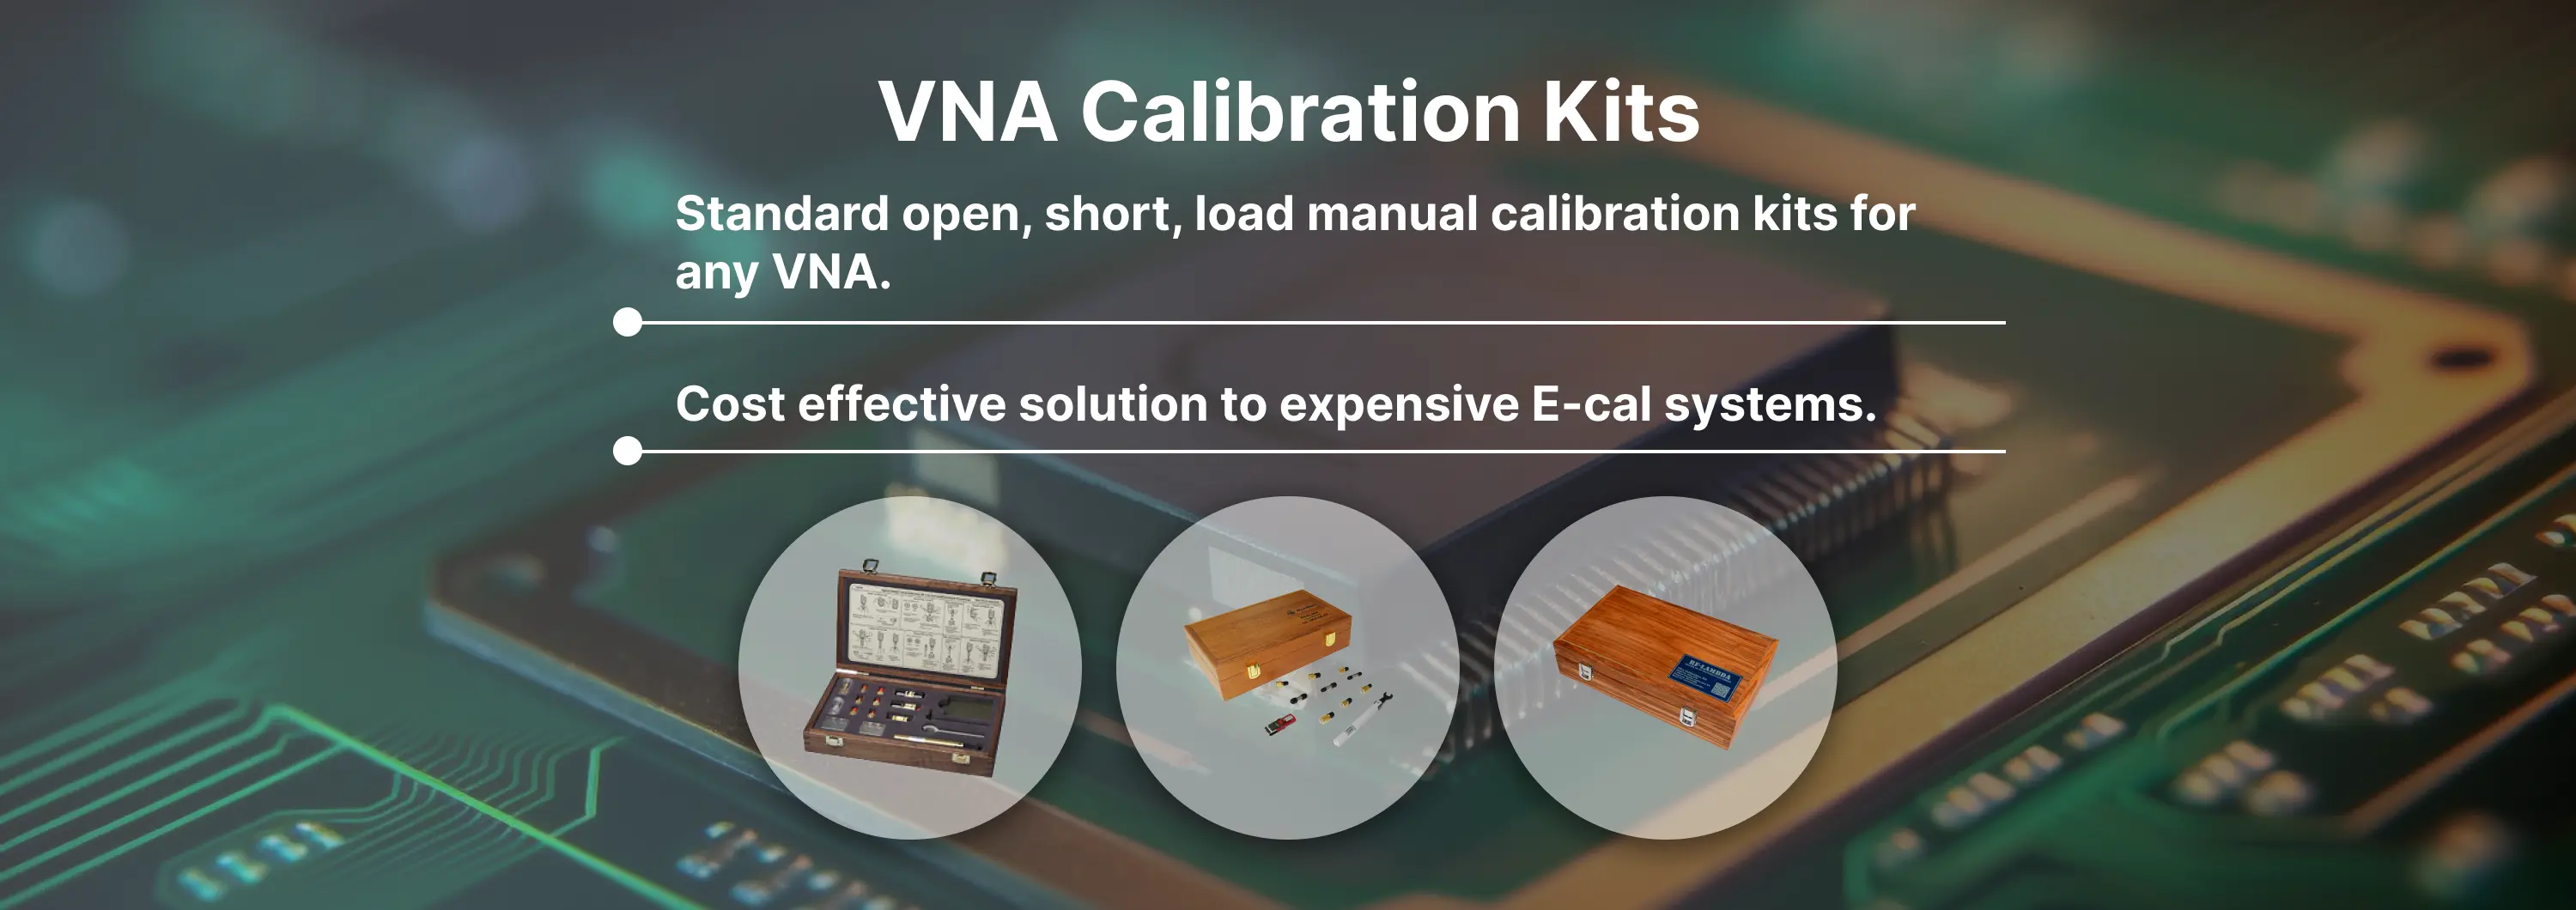 VNA Calibration Kits Banner